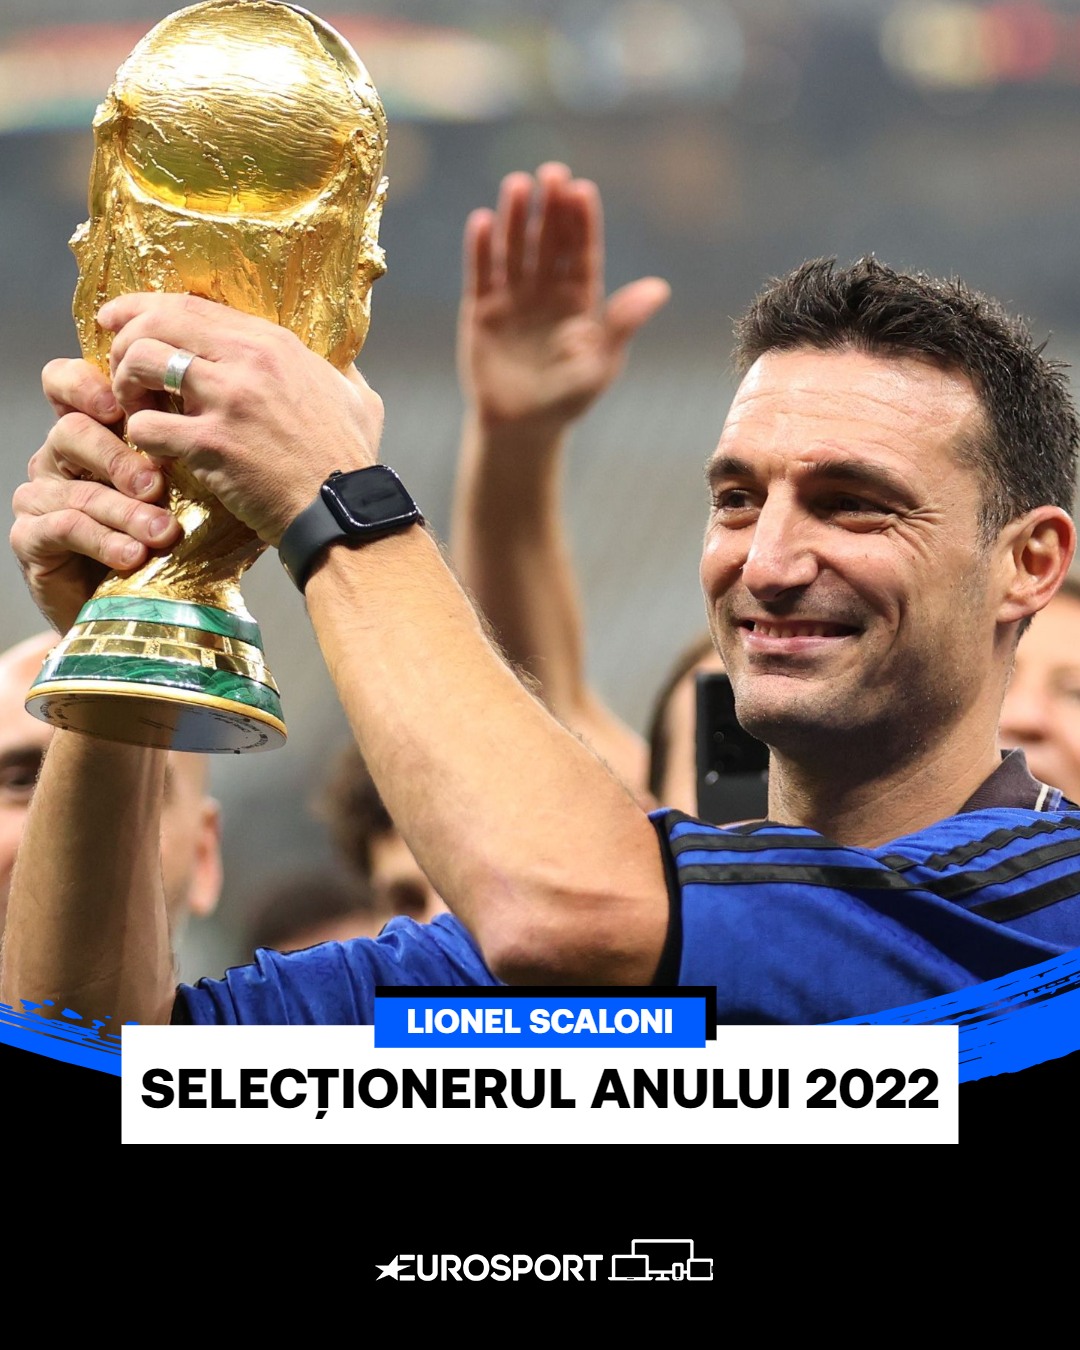 Lionel Scaloni selecționerul anului 2022